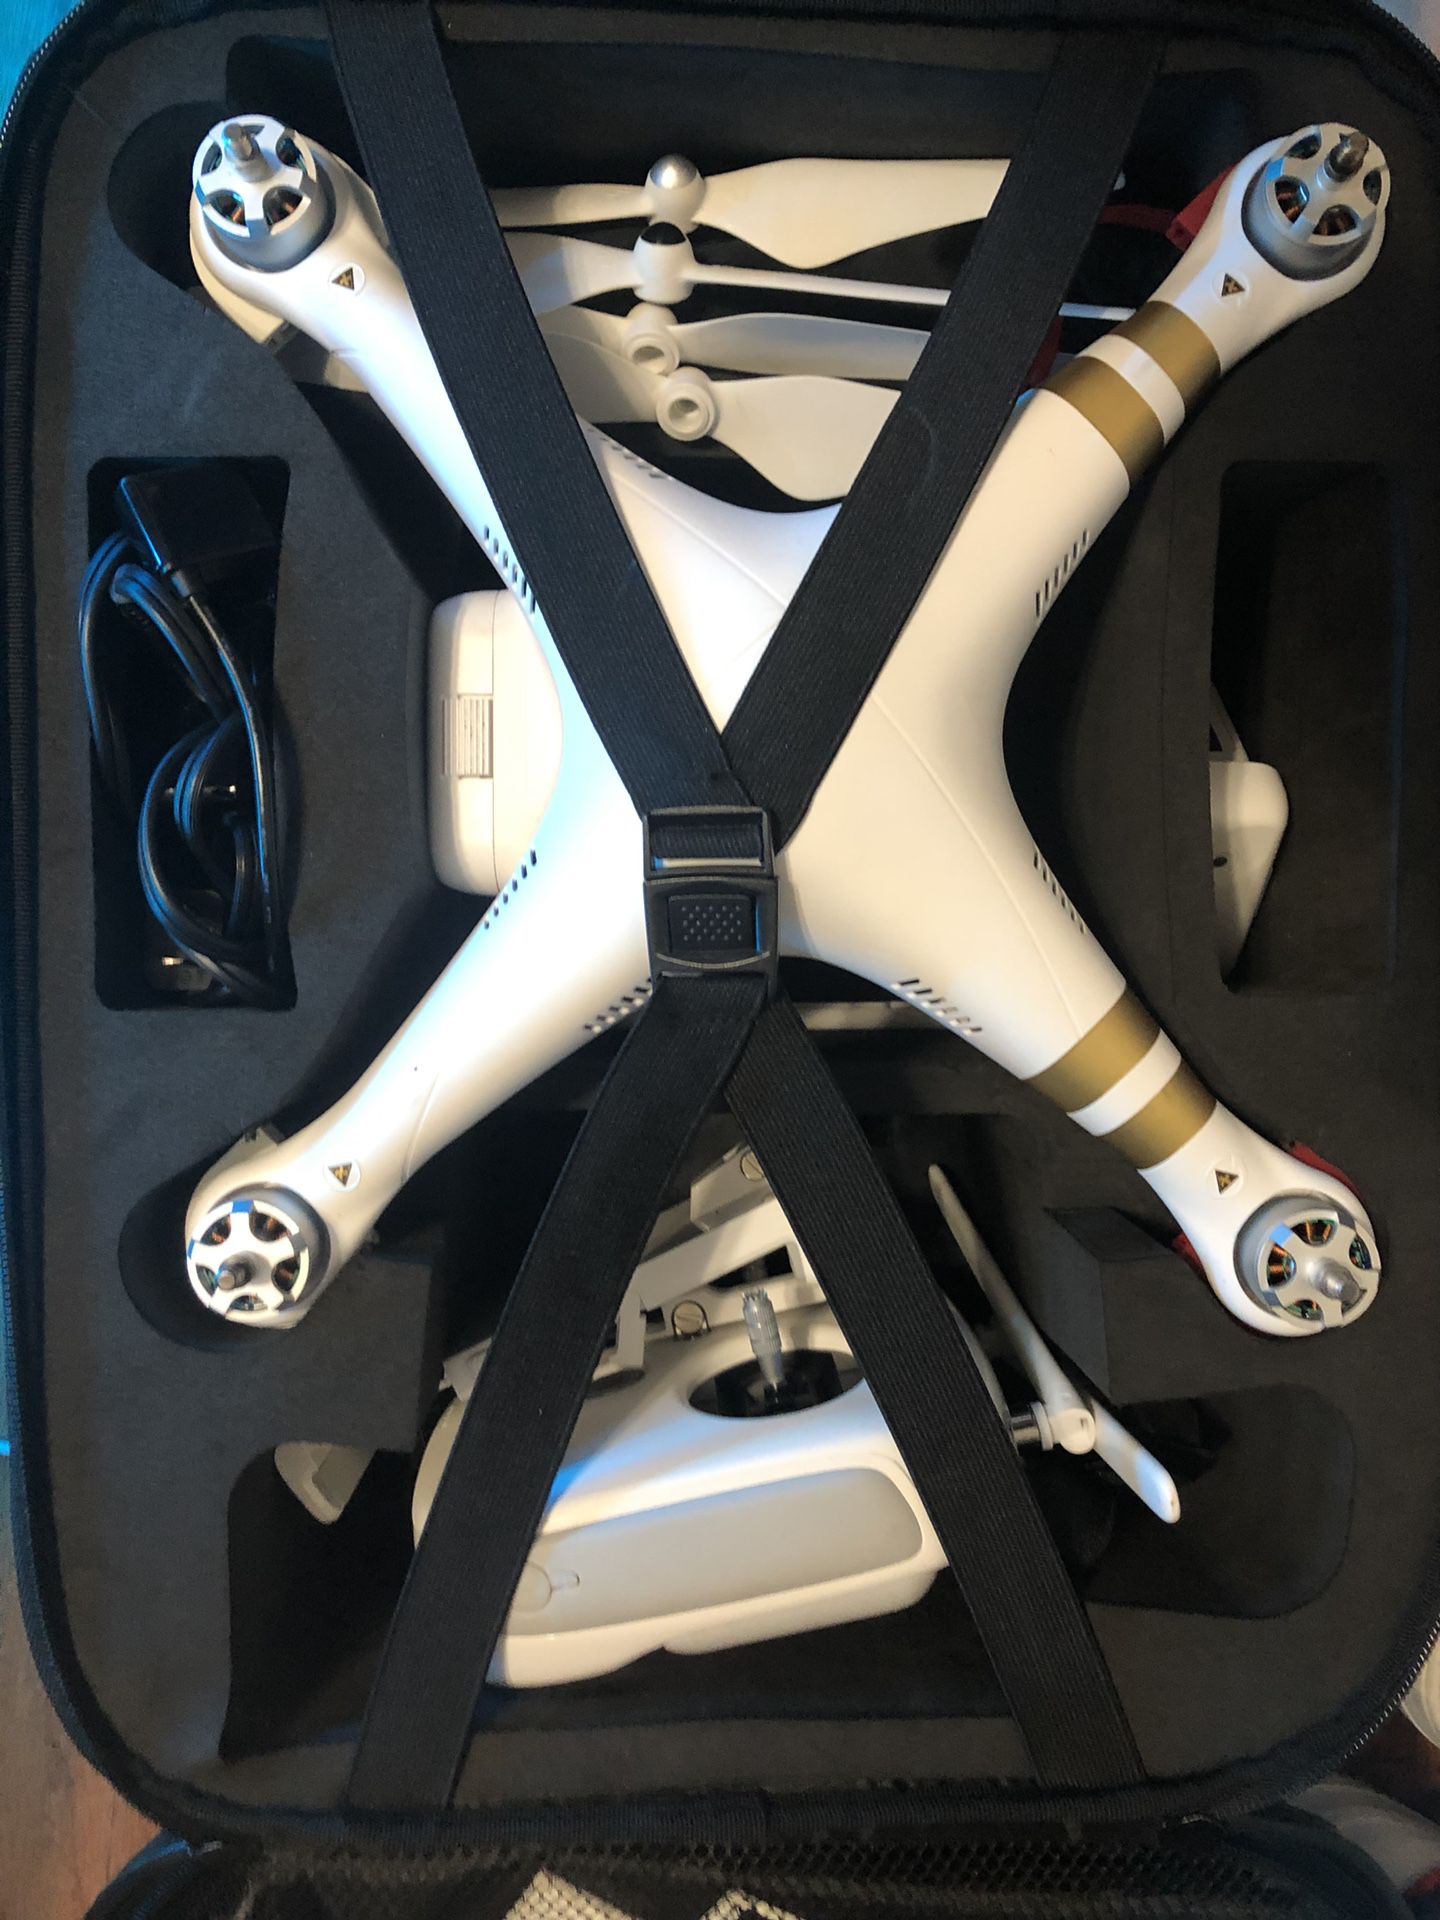 DJI Phantom Professional 3 4K Quadcopter